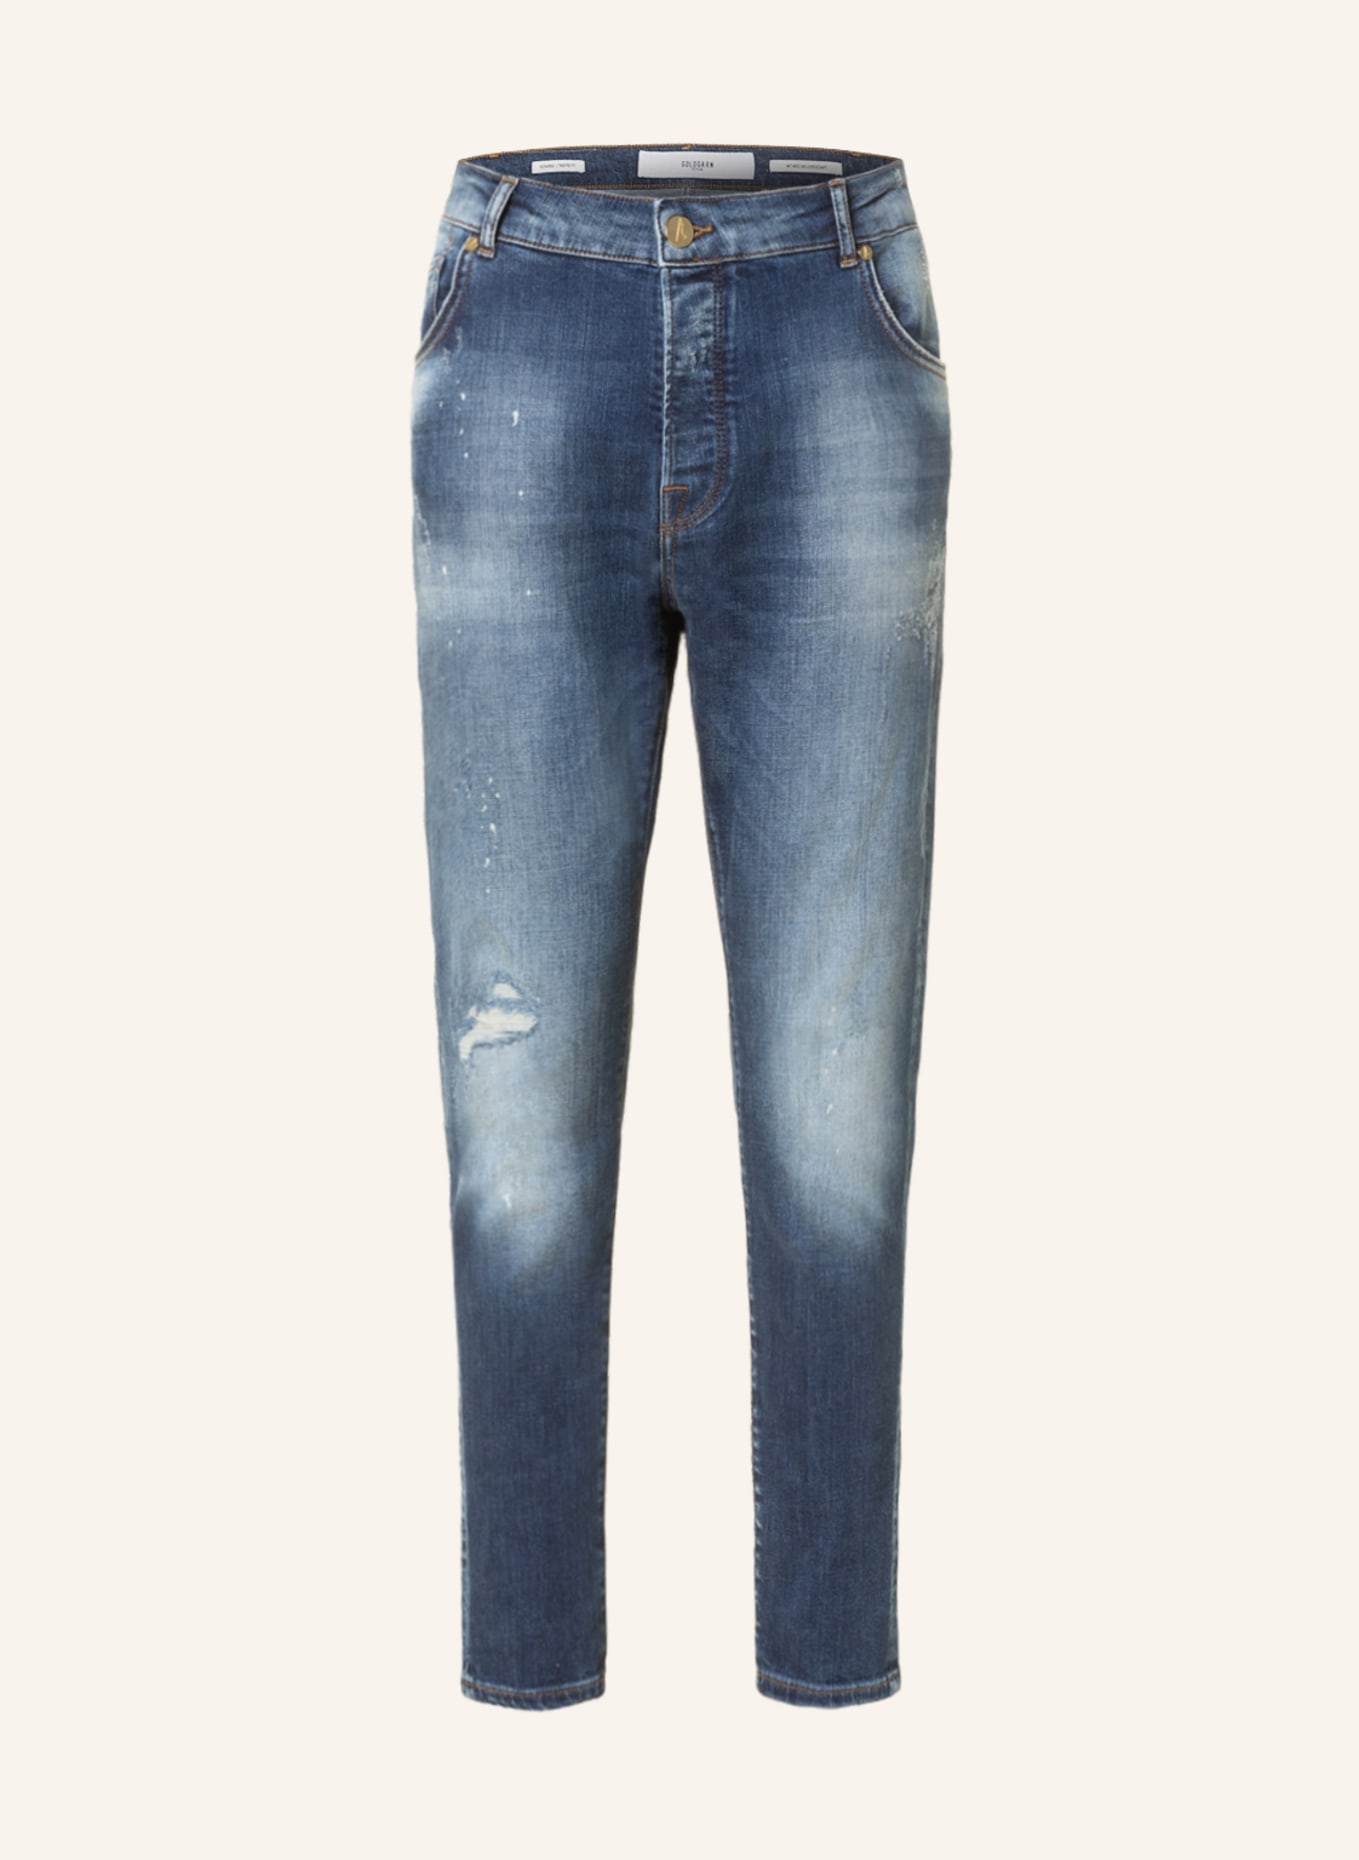 GOLDGARN DENIM Jeans NECKARAU Twisted Fit, Farbe: 1090 MID BLUE (Bild 1)